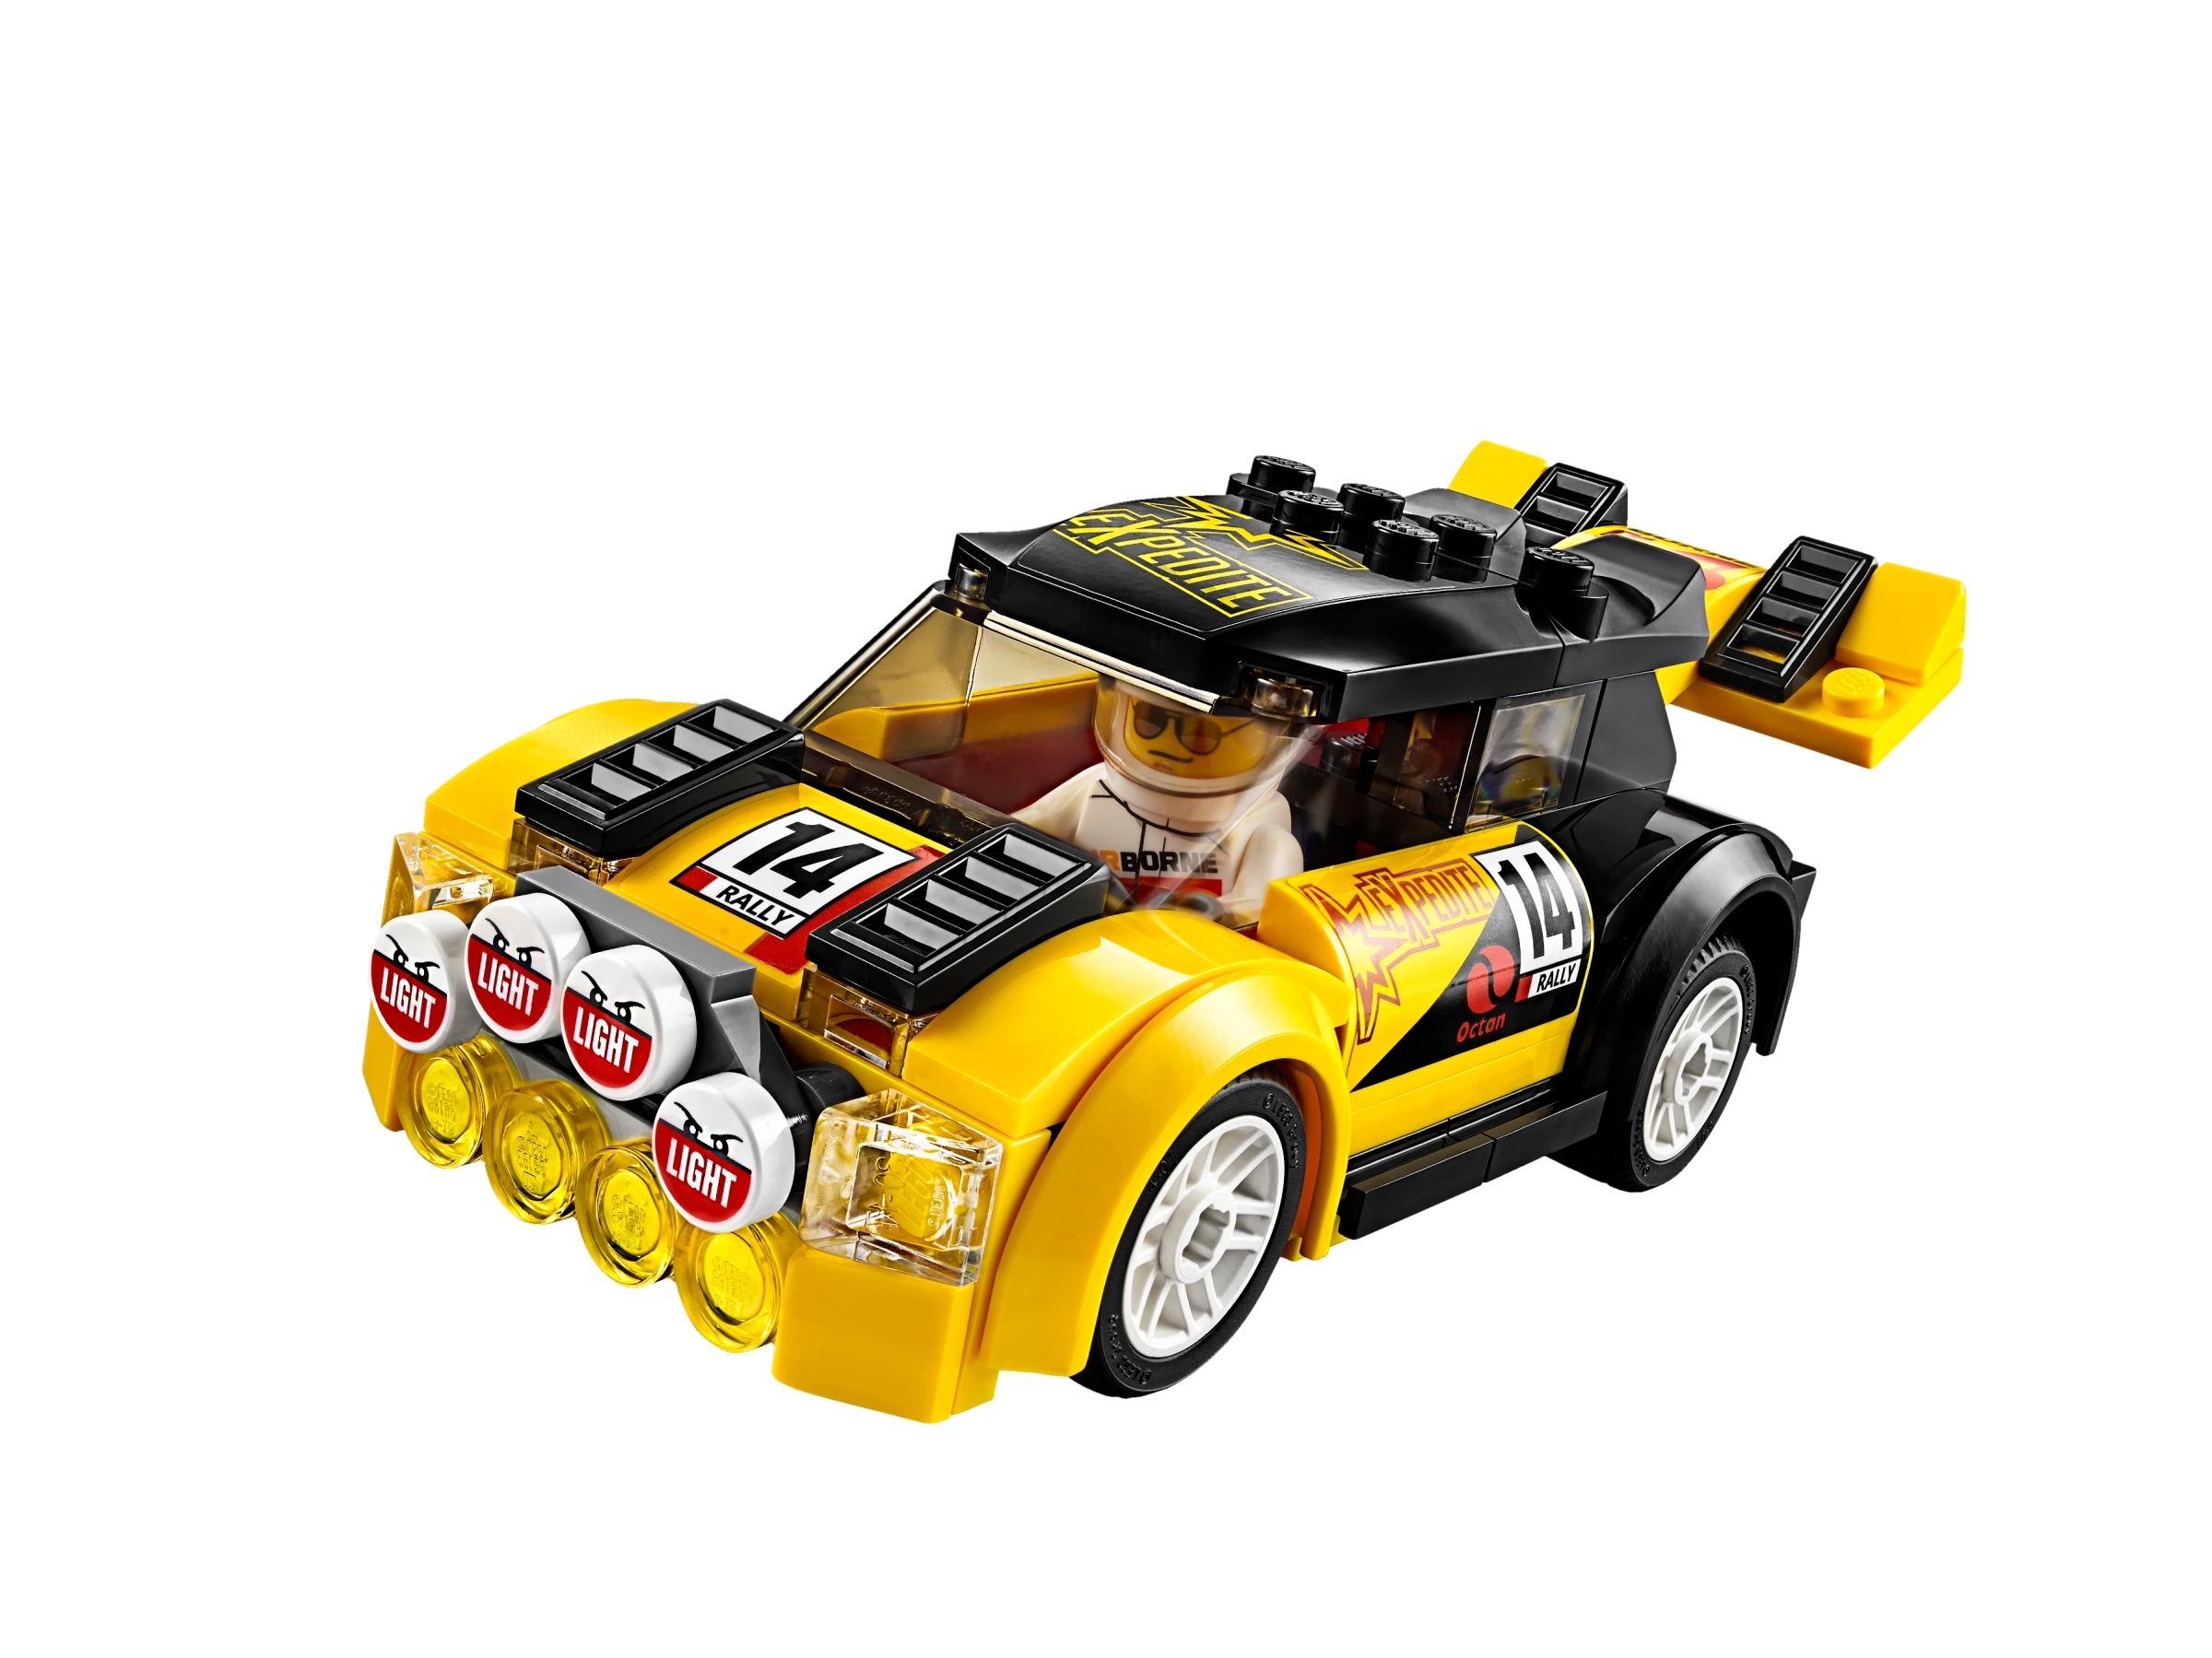 lego city rally car